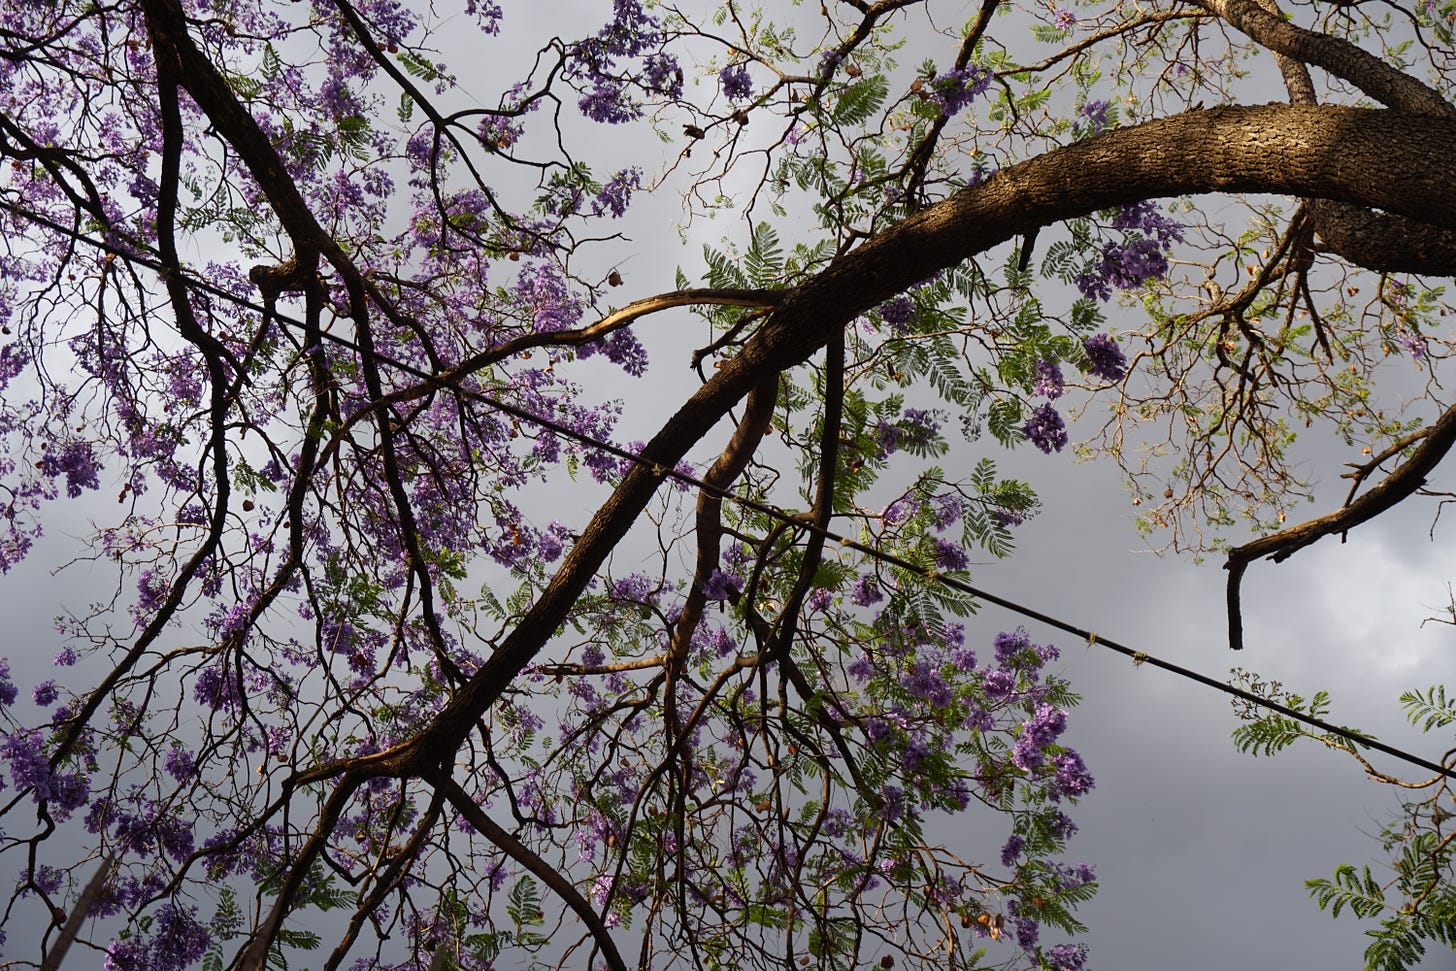 Jacaranda blossoms set against a stormy sky.